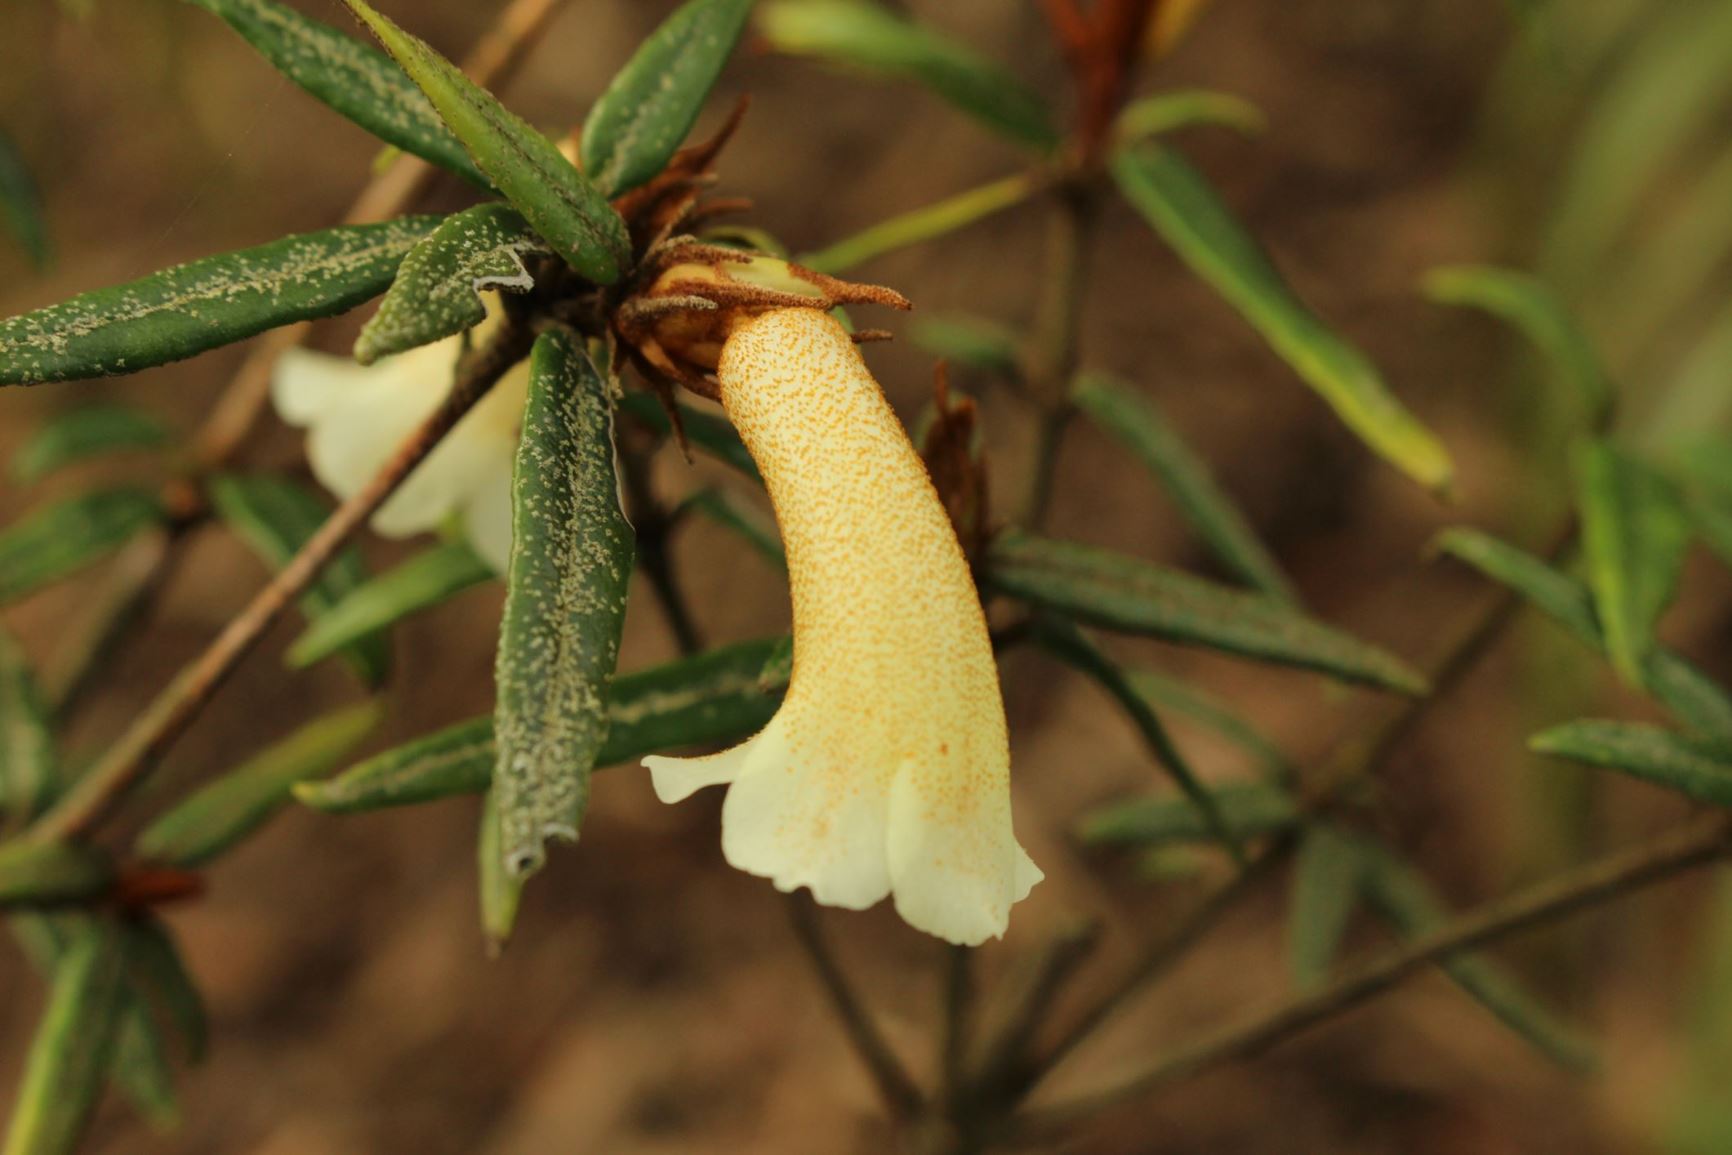 Rhododendron caliginis (Vireya)